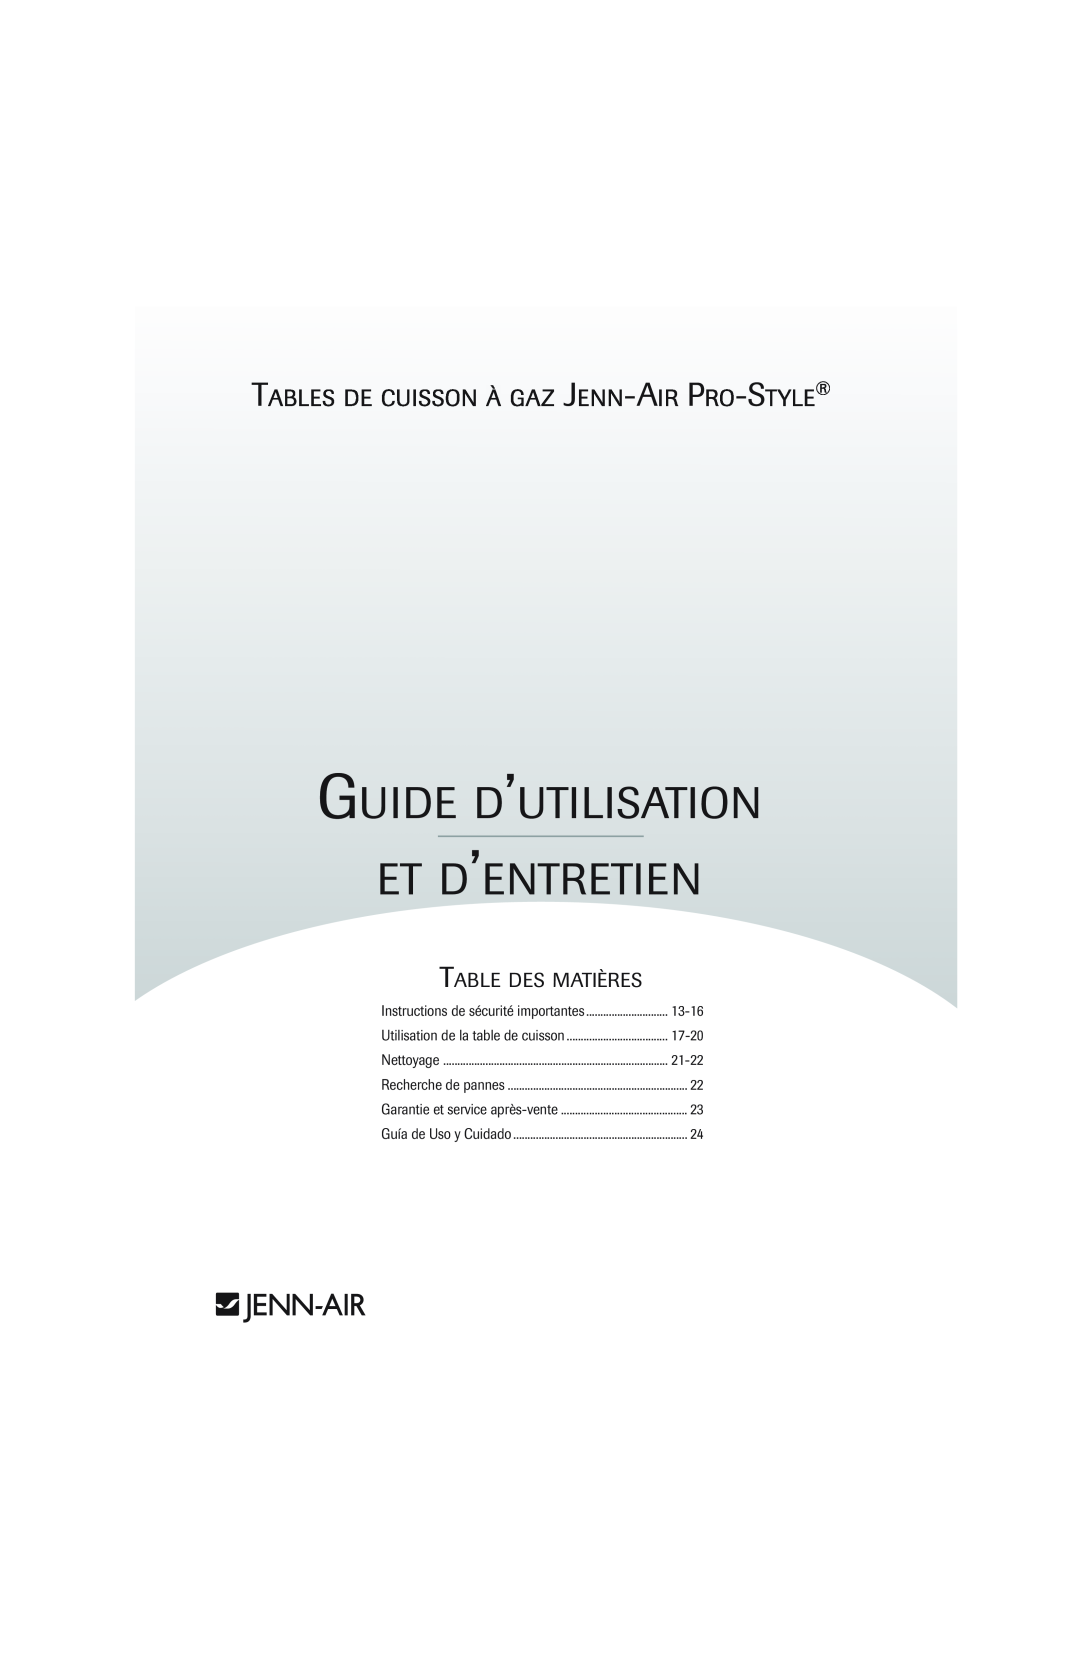 Jenn-Air 8112P342-60 Guide D’Utilisation Et D’Entretien, T J-A P-S, Table Des Matières, Garantie et service après-vente 